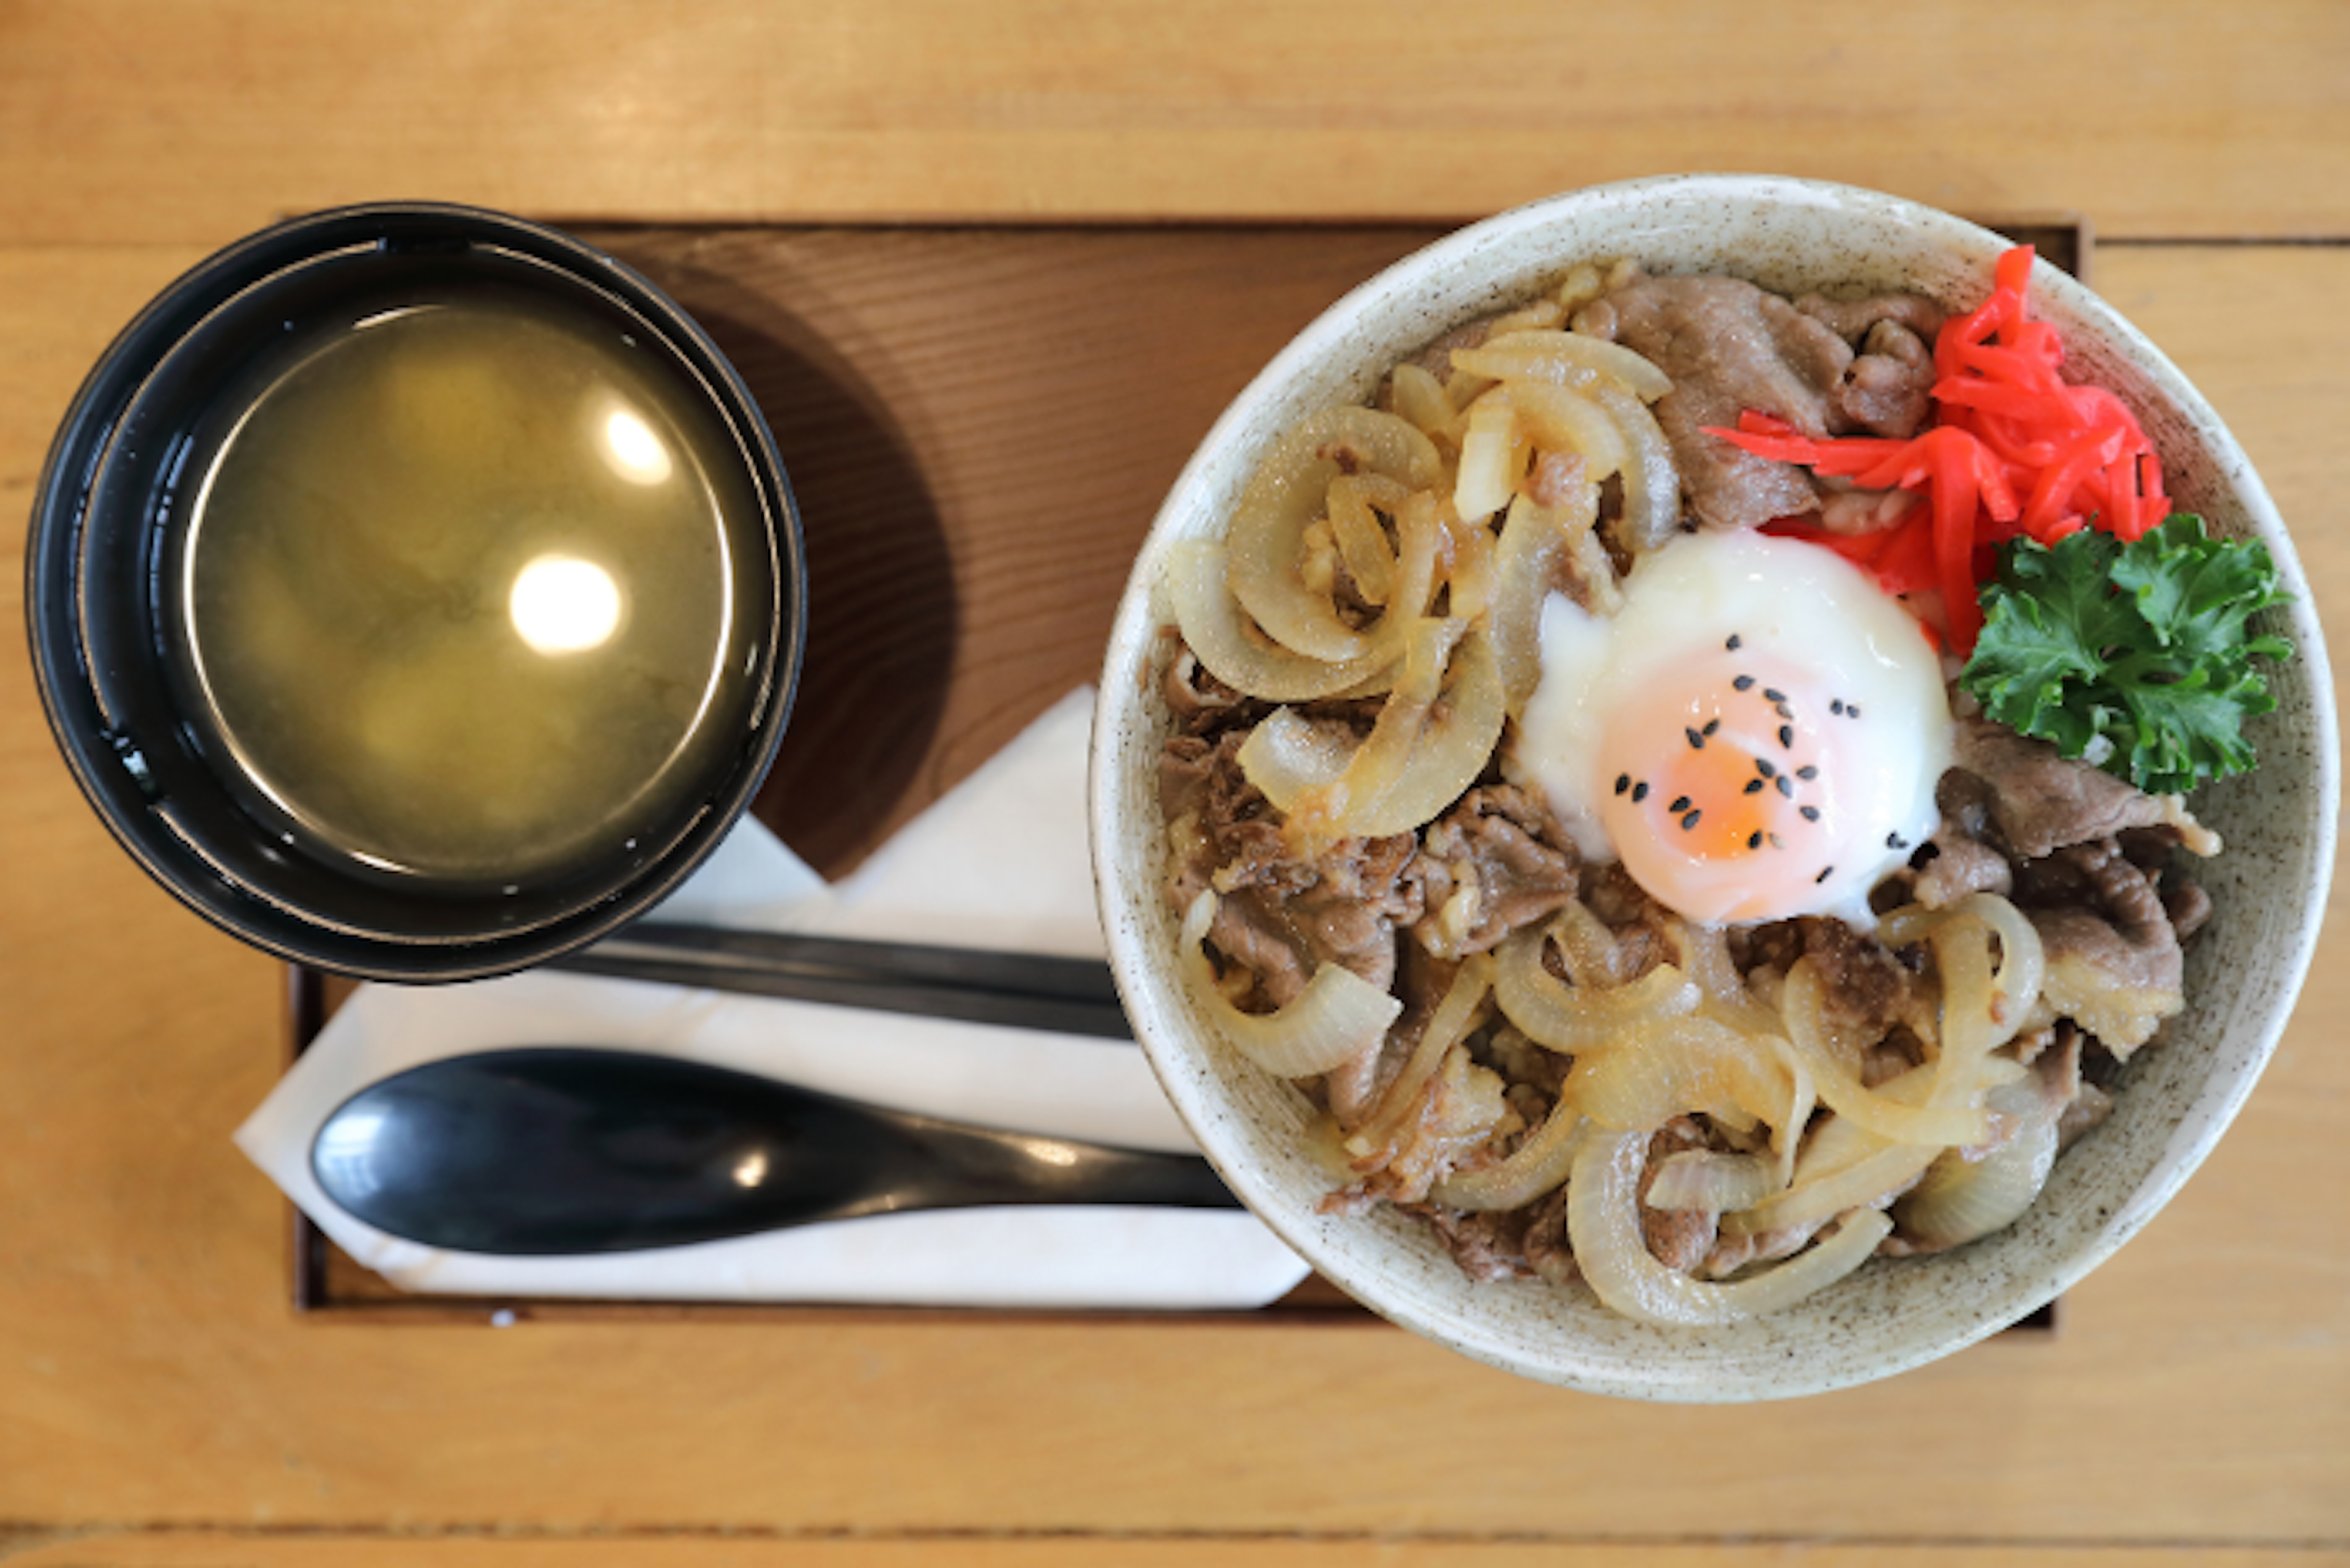 Authentisches Gyudon (牛丼) : Einfach und köstlich, japanische Rindfleischschale mit leckerem halbgekochtem Ei.